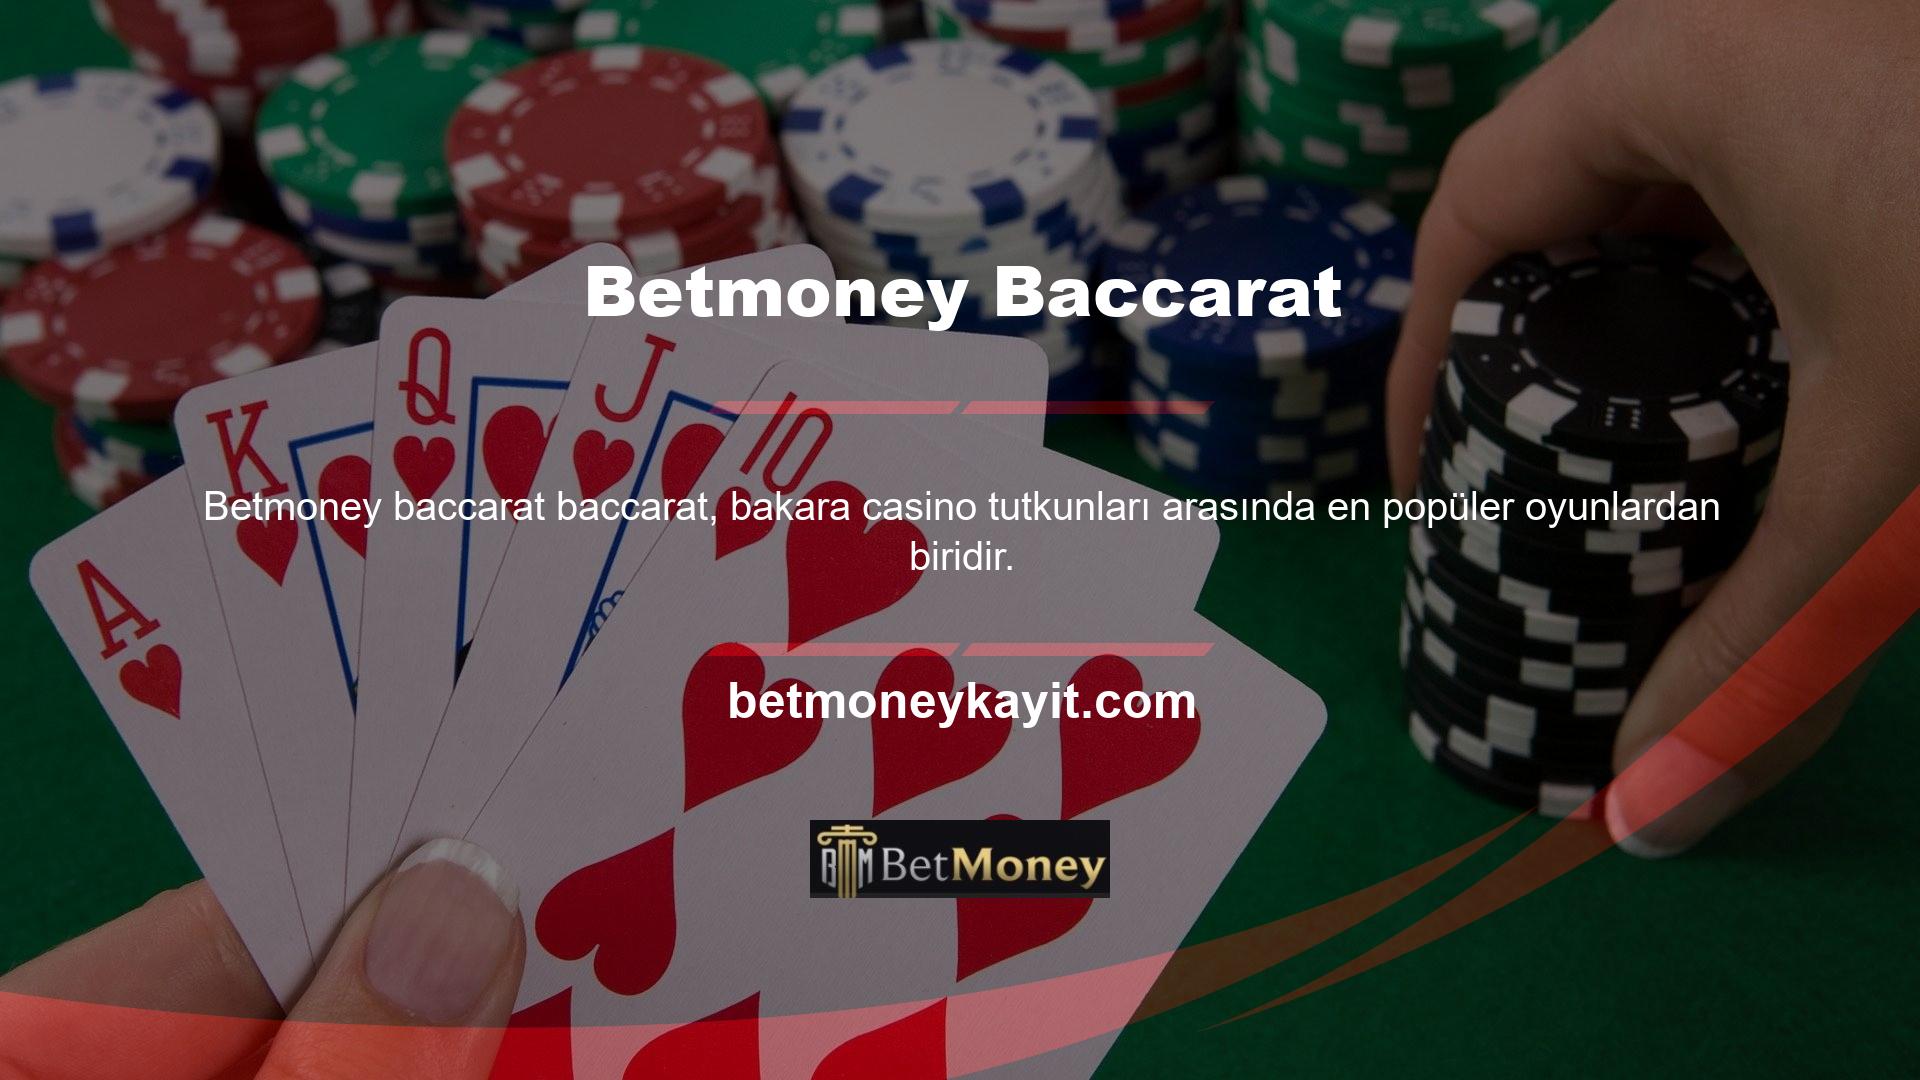 Türkçe Bakara olarak da bilinen Baccarat, casinolarda popüler bir kart oyunudur